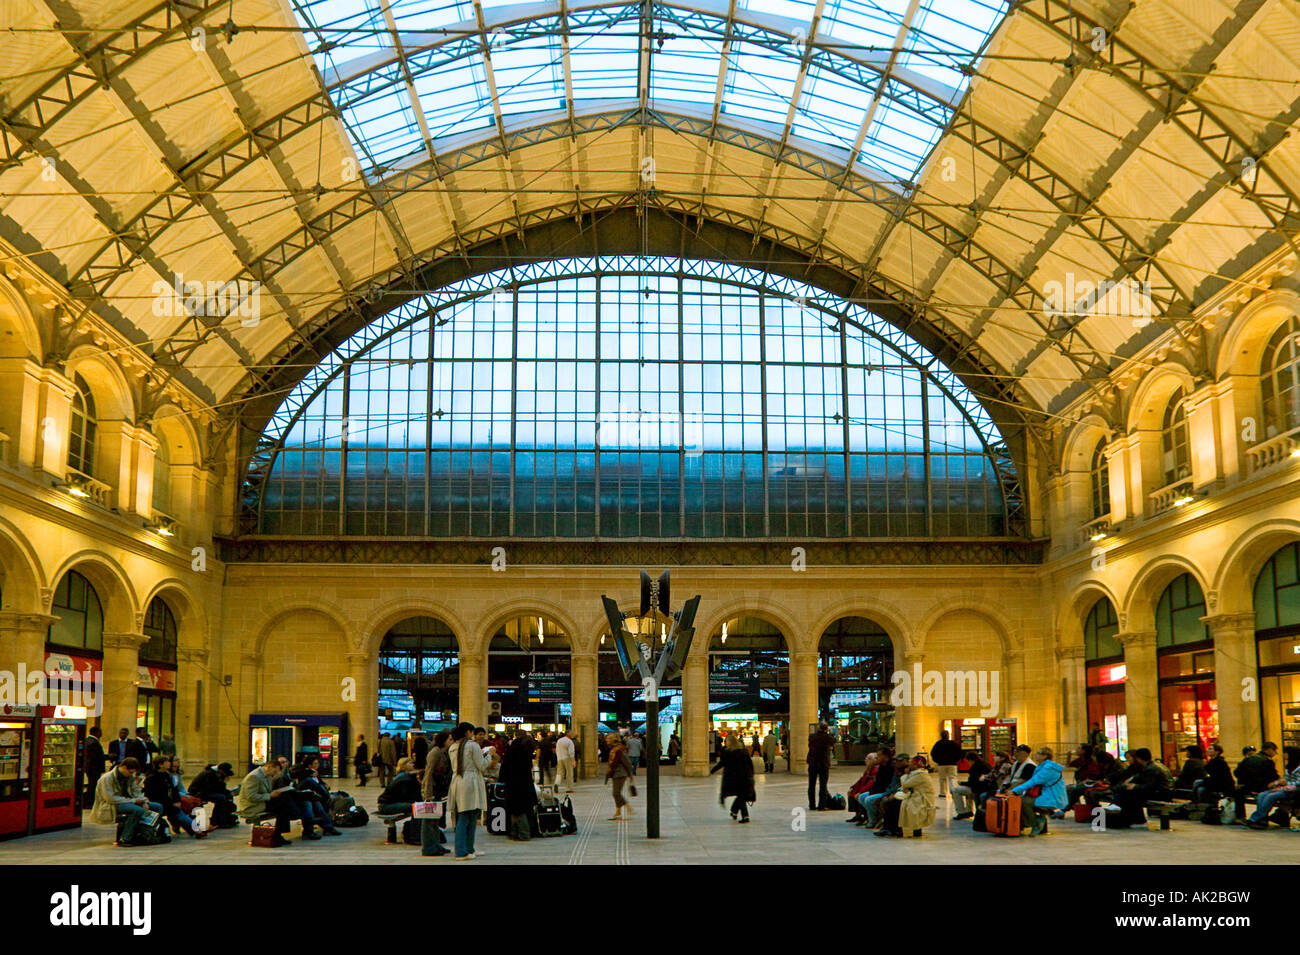 Gare de L Est - Paris - France Stock Photo